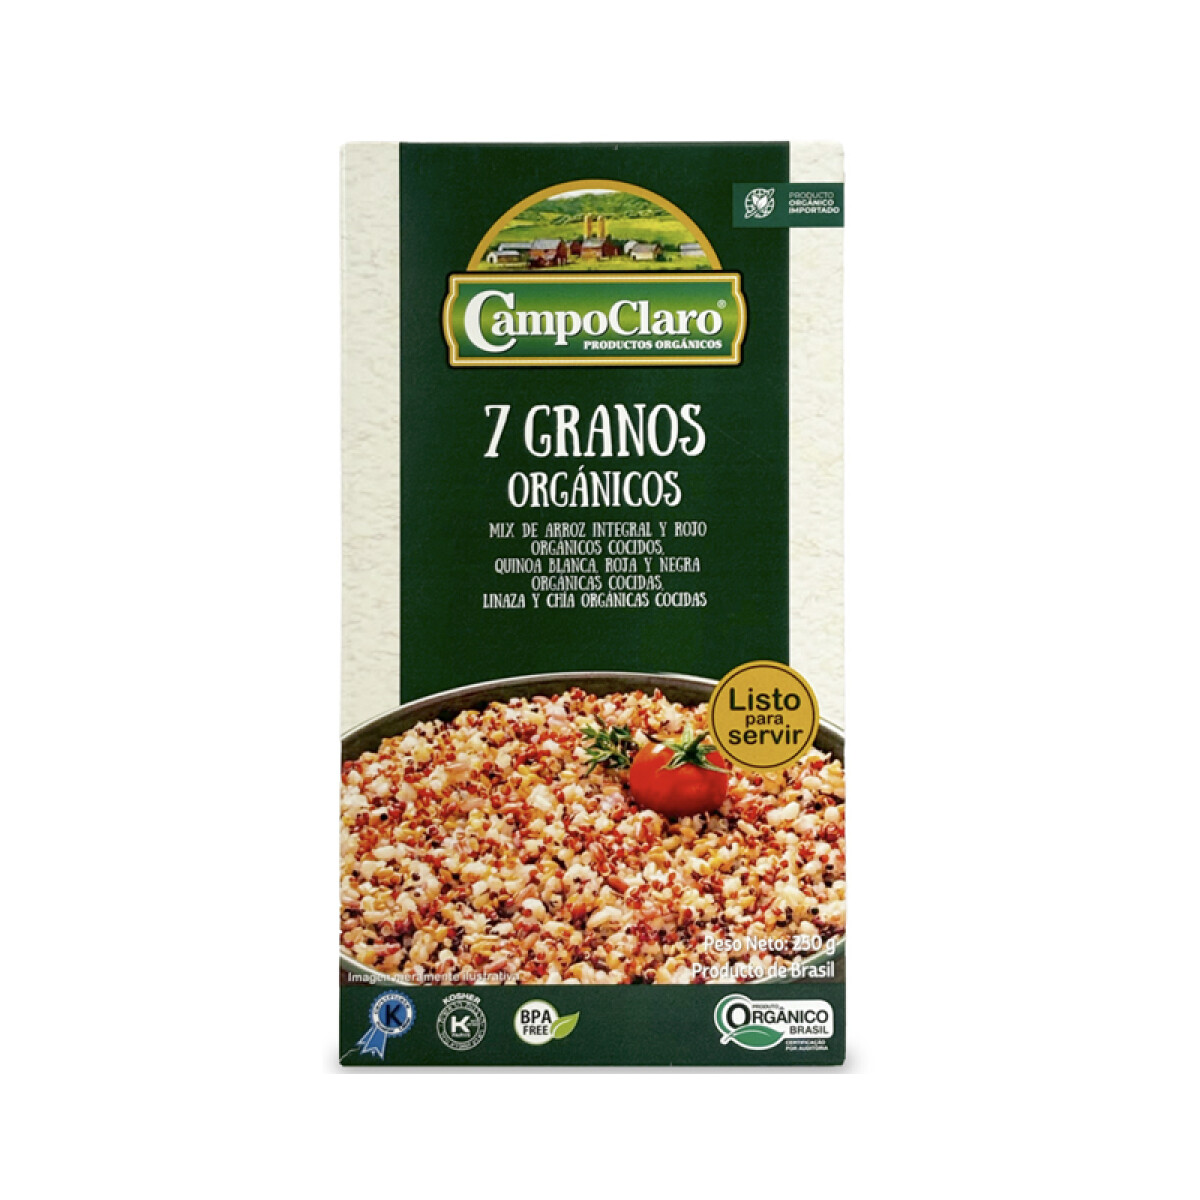 7 granos cocidos organicos 250g Campo Claro 